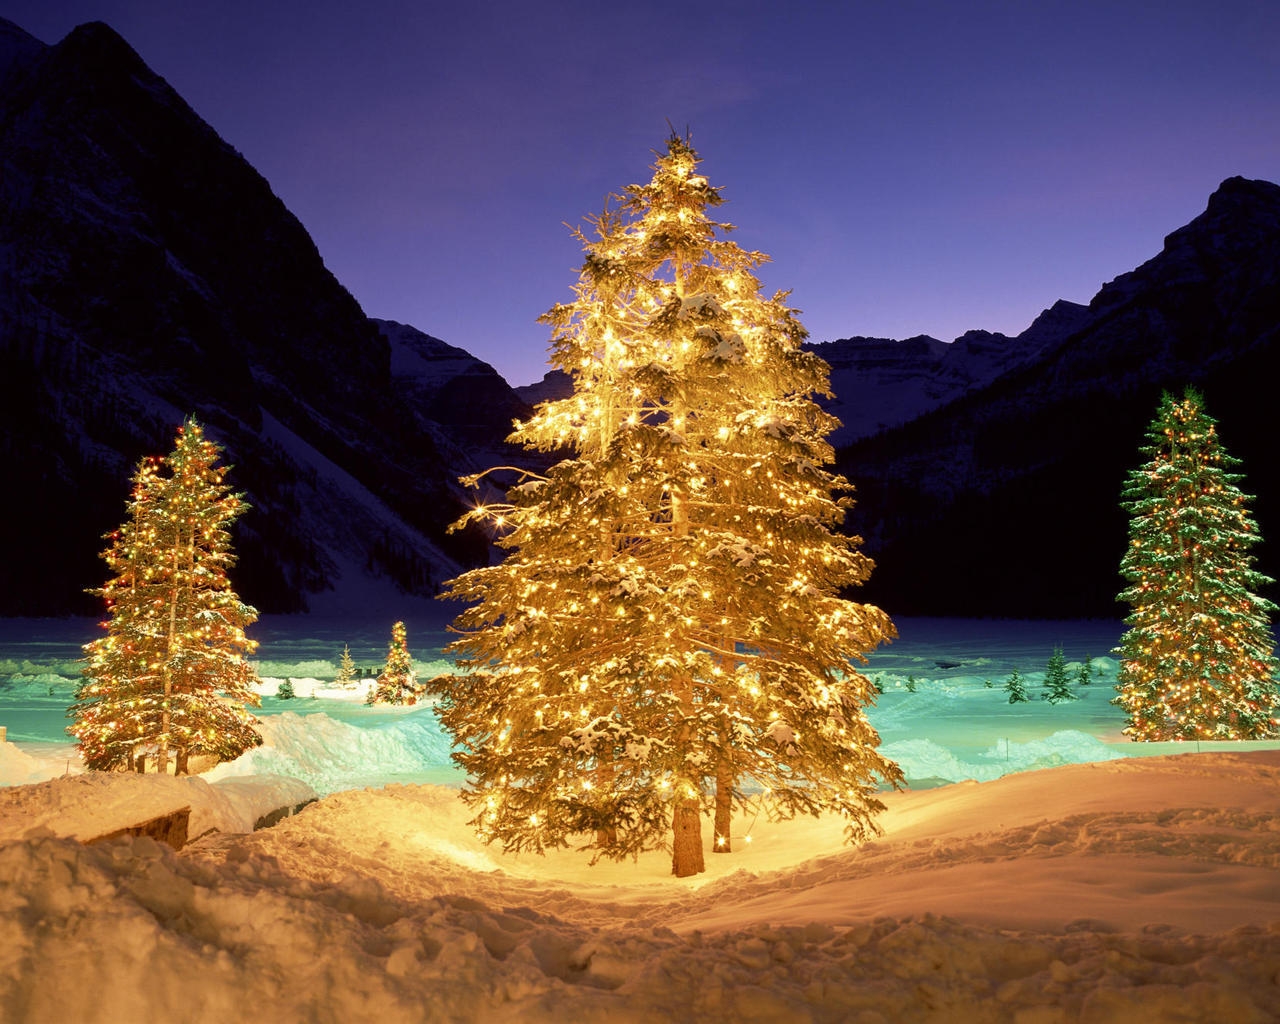 Christmas Tree Lighting for 1280 x 1024 resolution